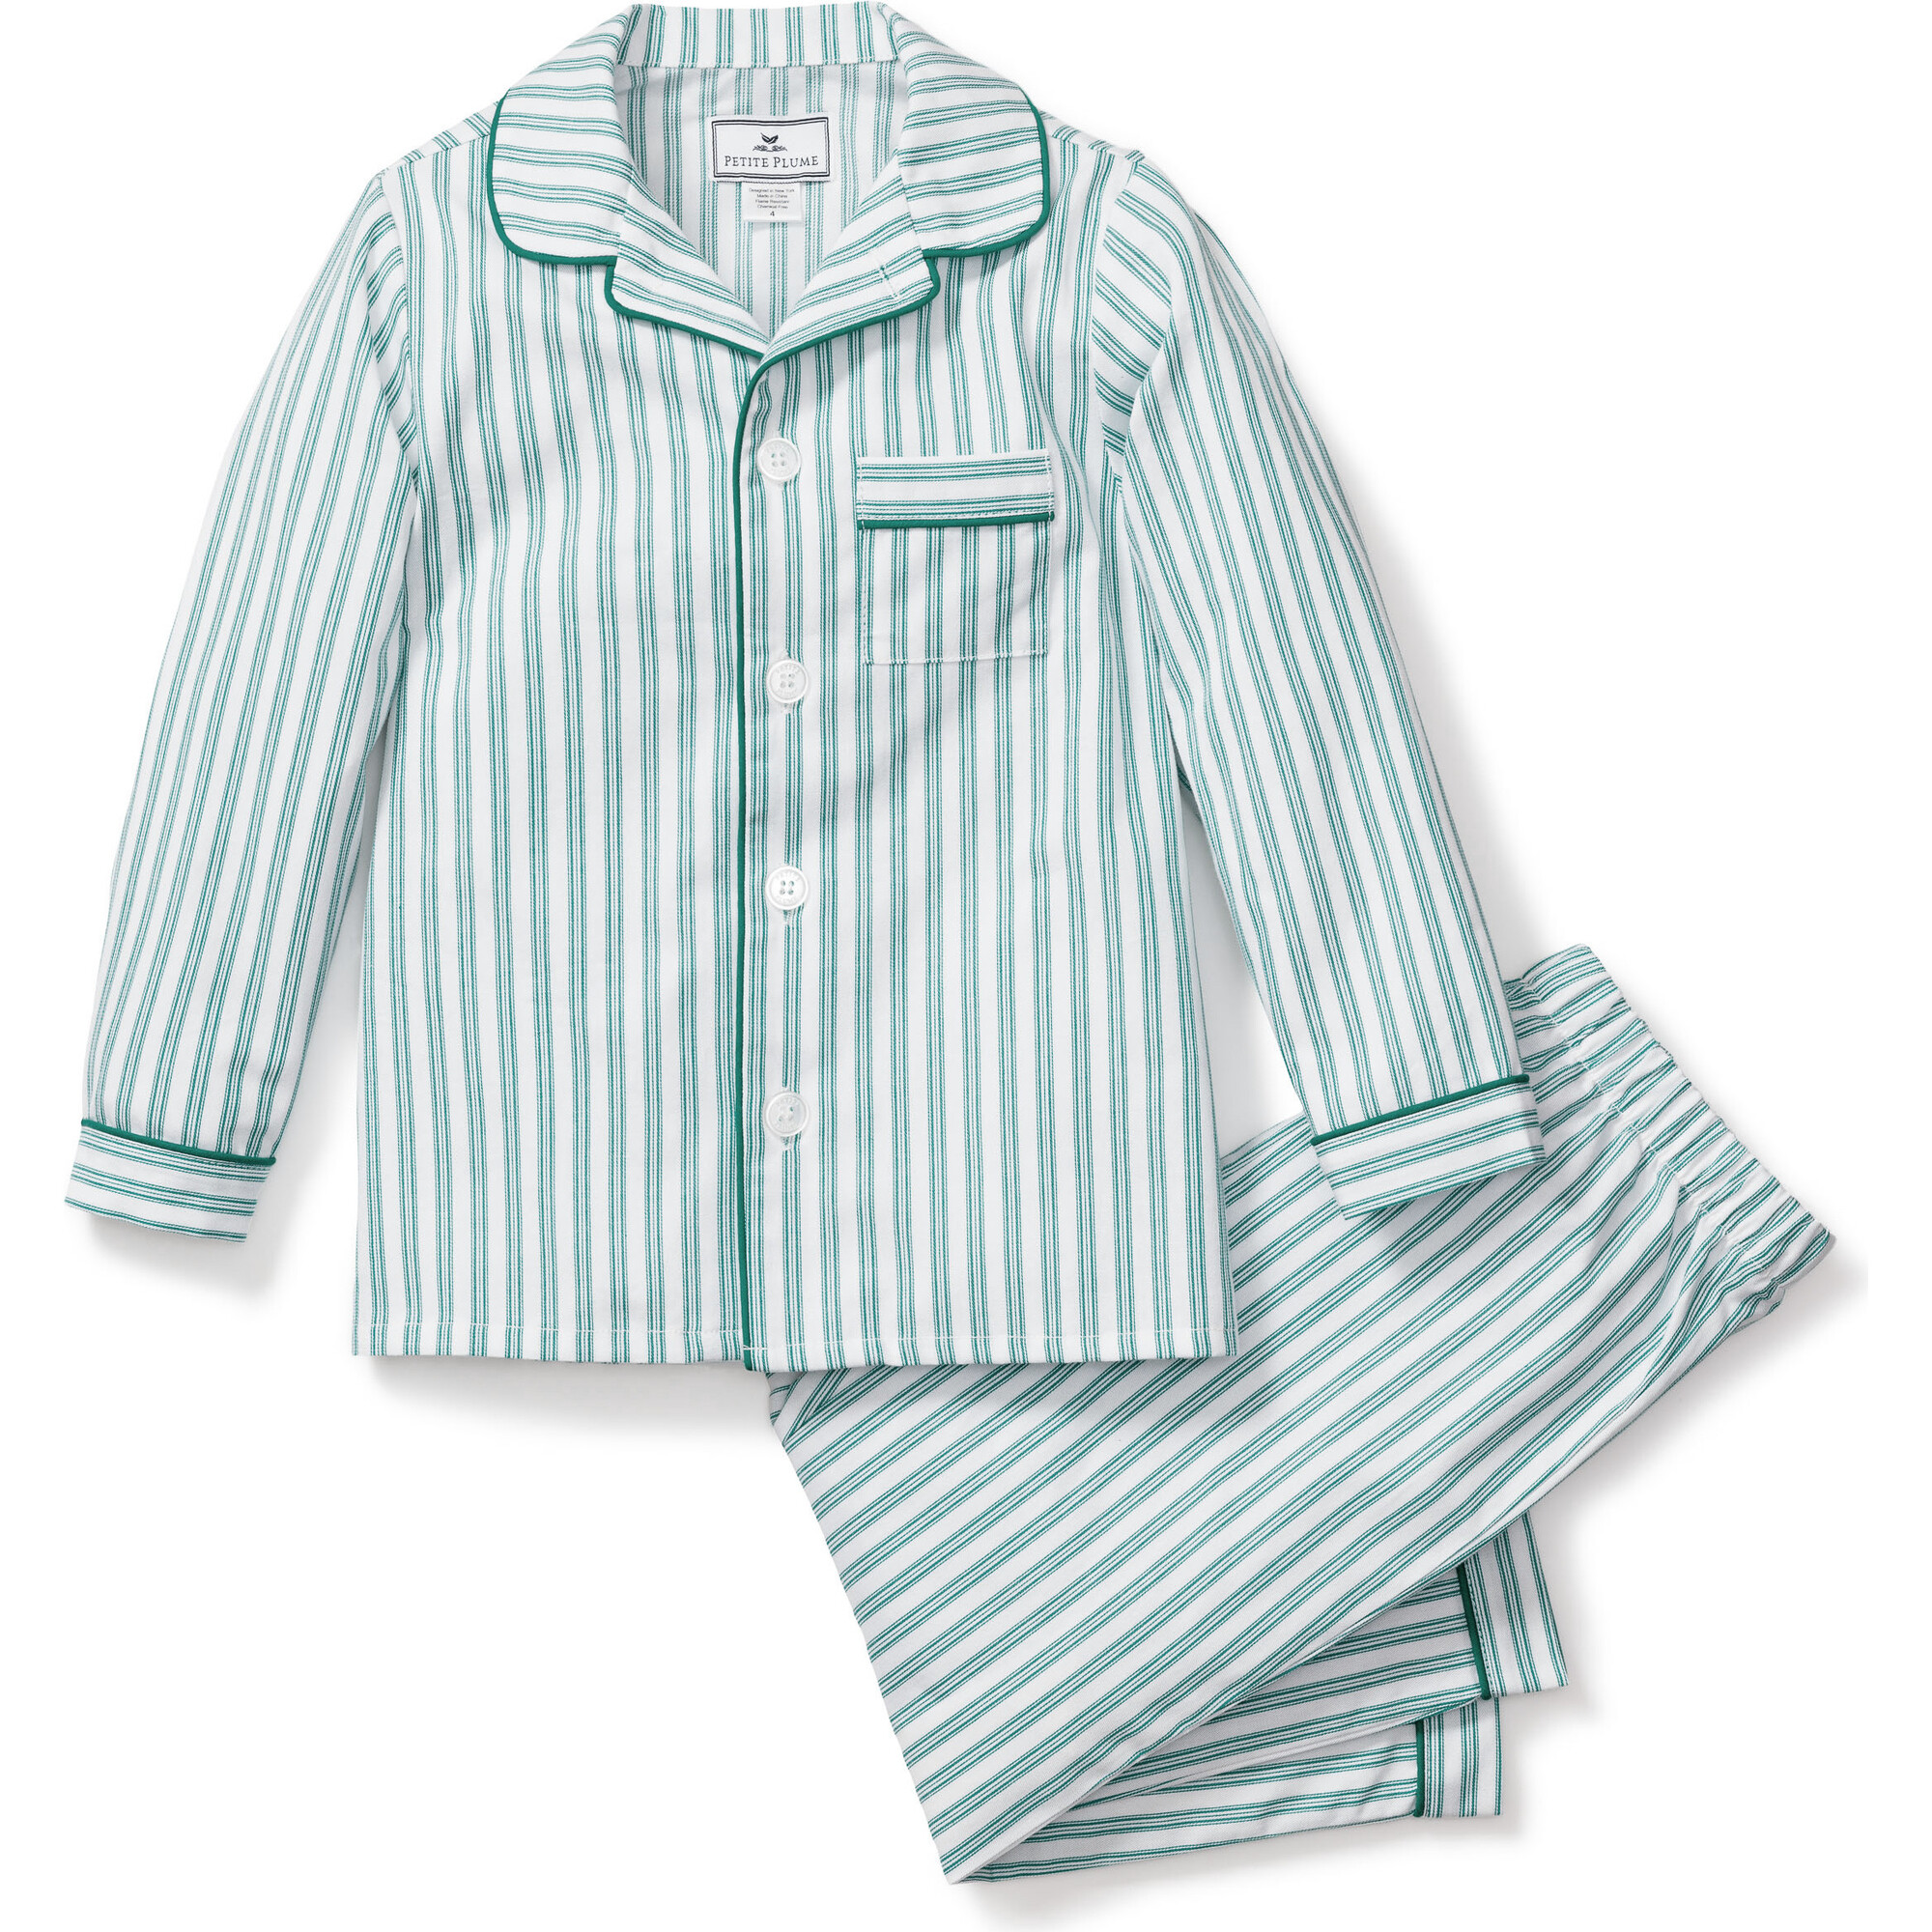 Petite Plume French Ticking Pajama Set